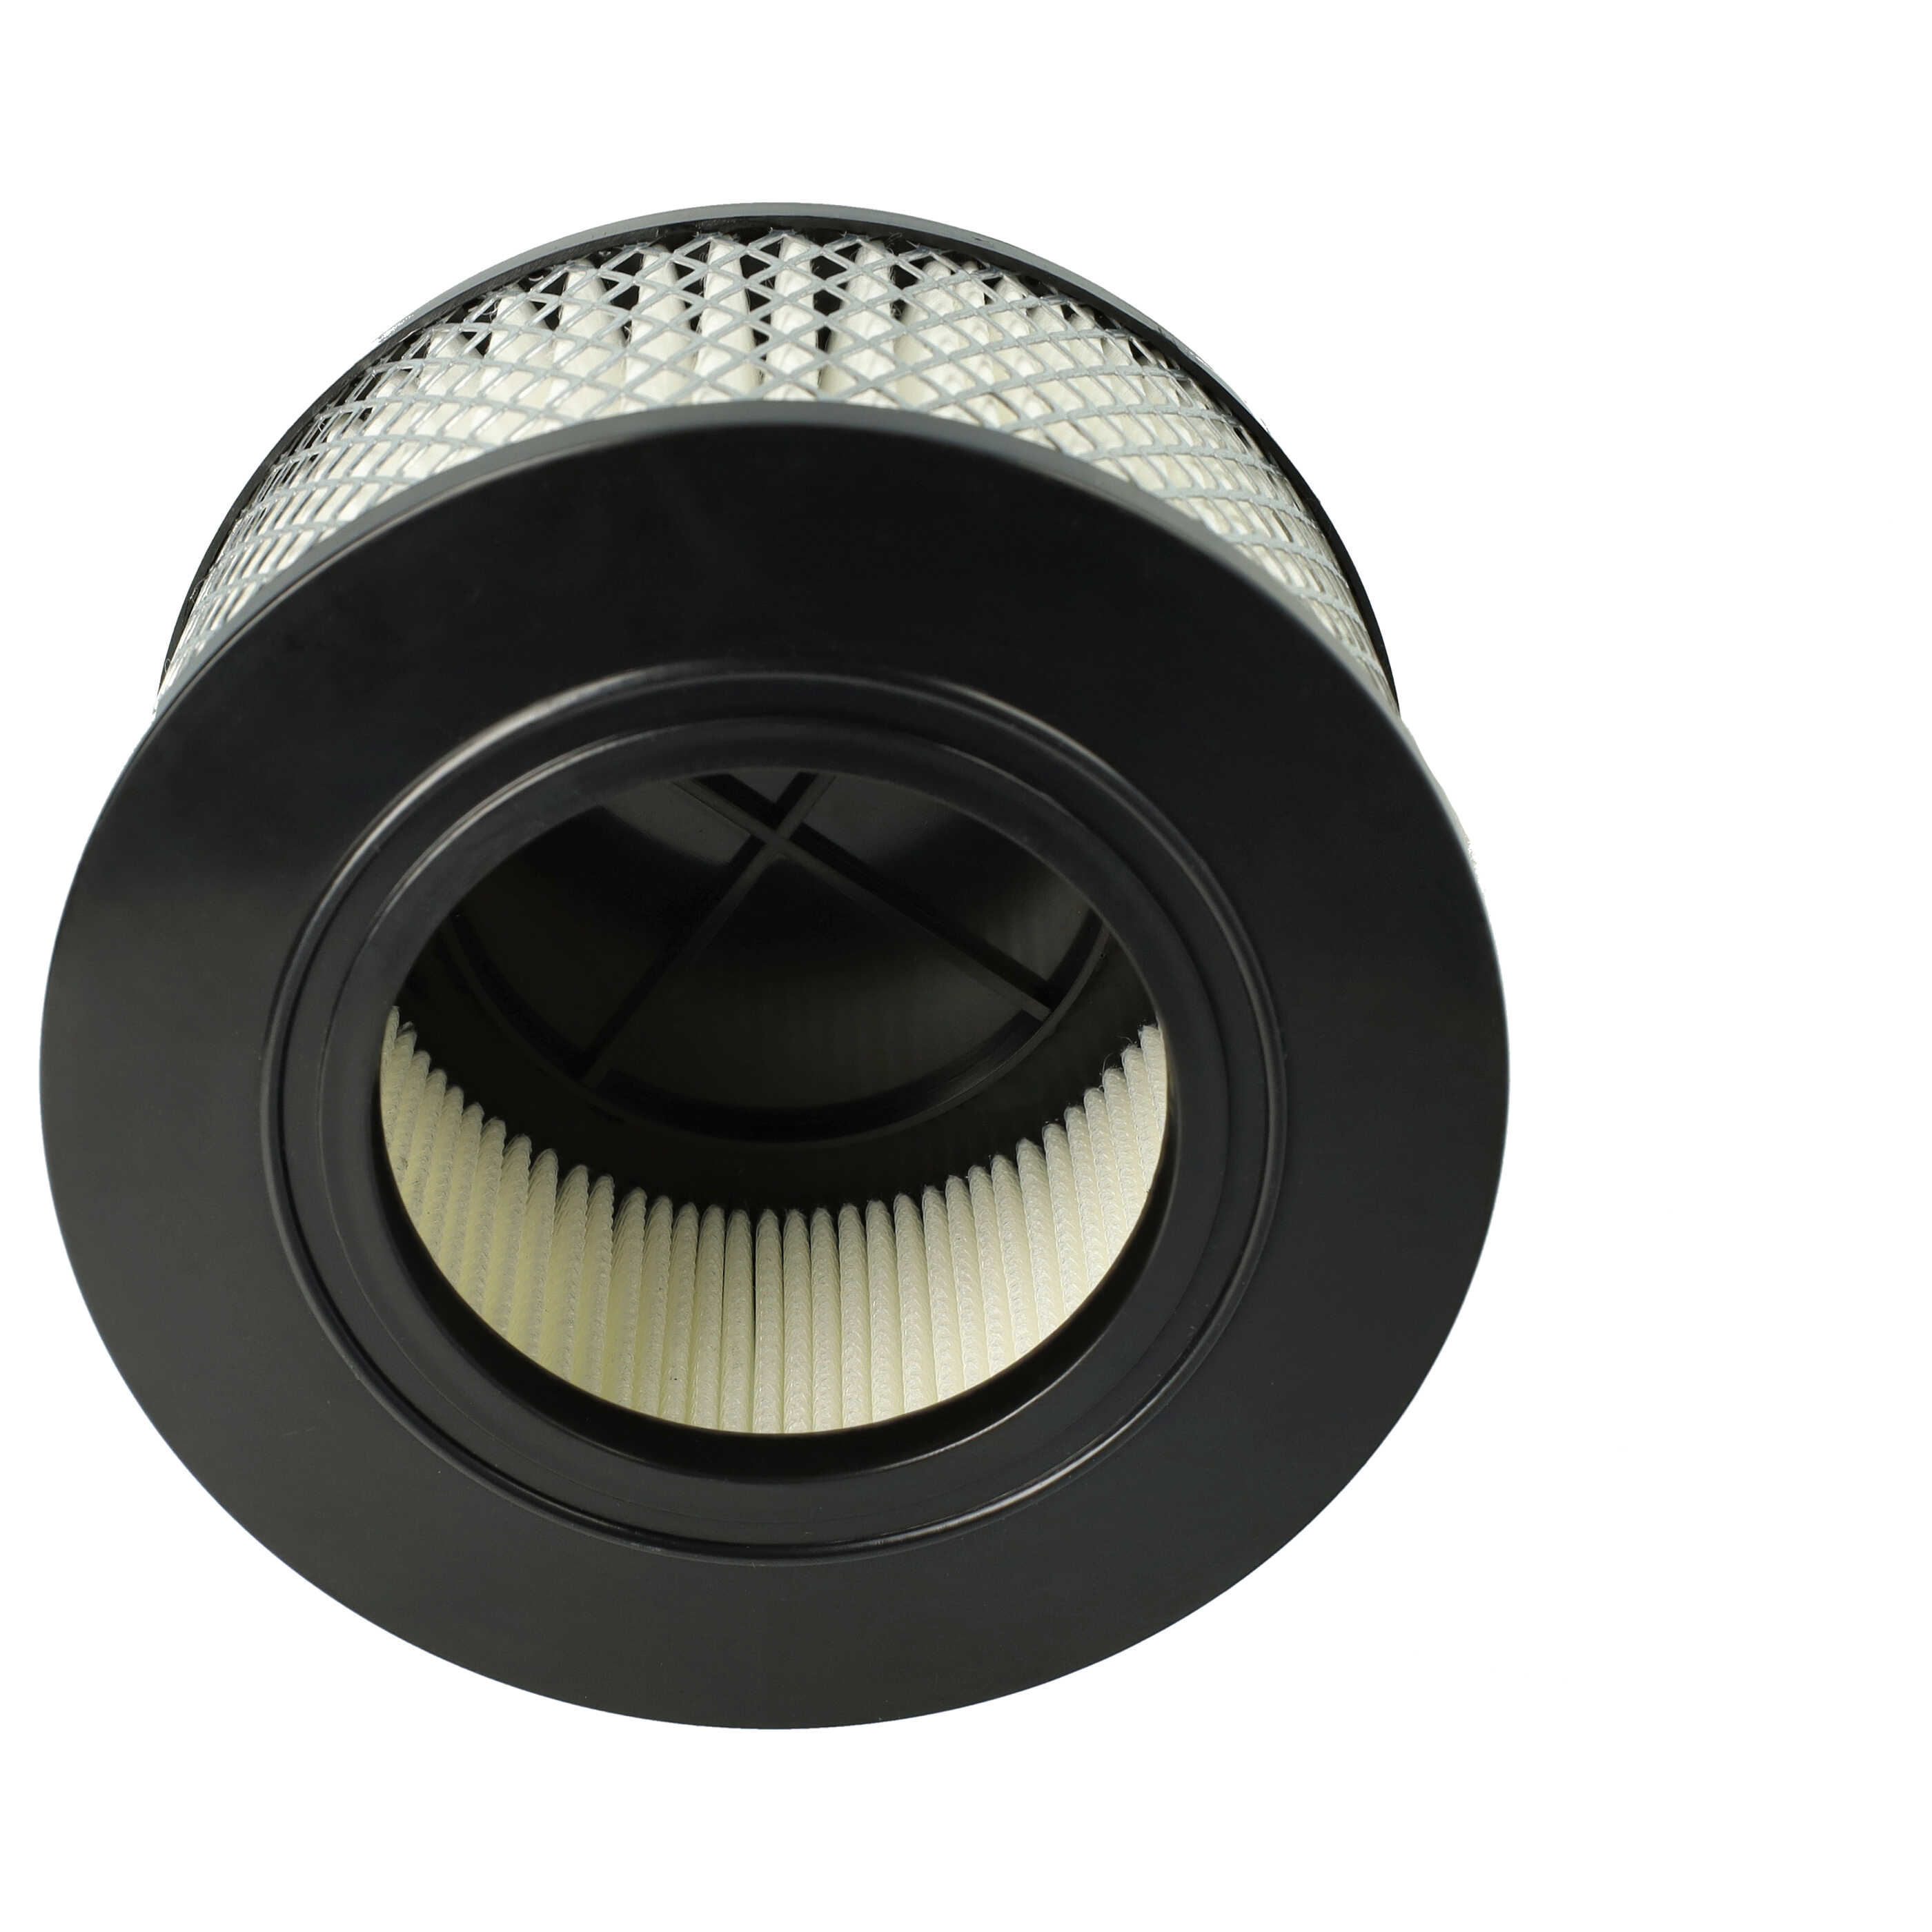 Filtro sostituisce Flex 445.126 per aspirapolvere - filtro HEPA, nero / bianco